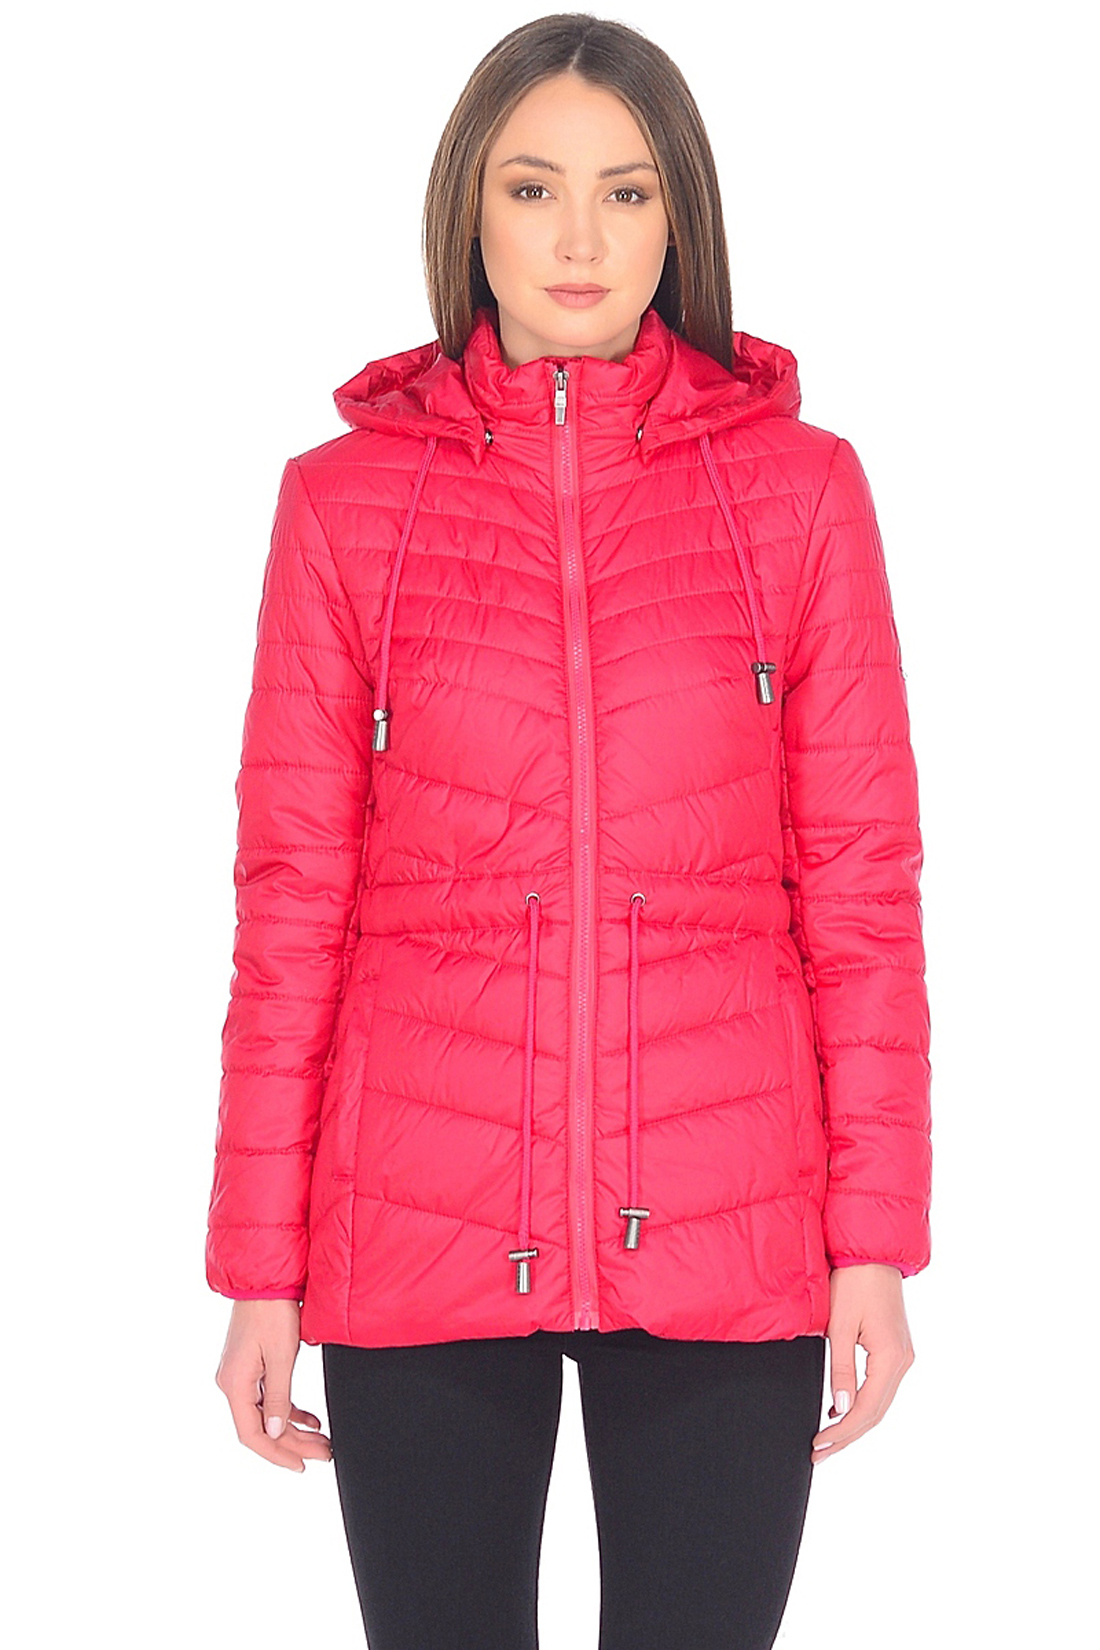 Приталенная куртка с капюшоном (арт. baon B038202), размер L, цвет красный Приталенная куртка с капюшоном (арт. baon B038202) - фото 1